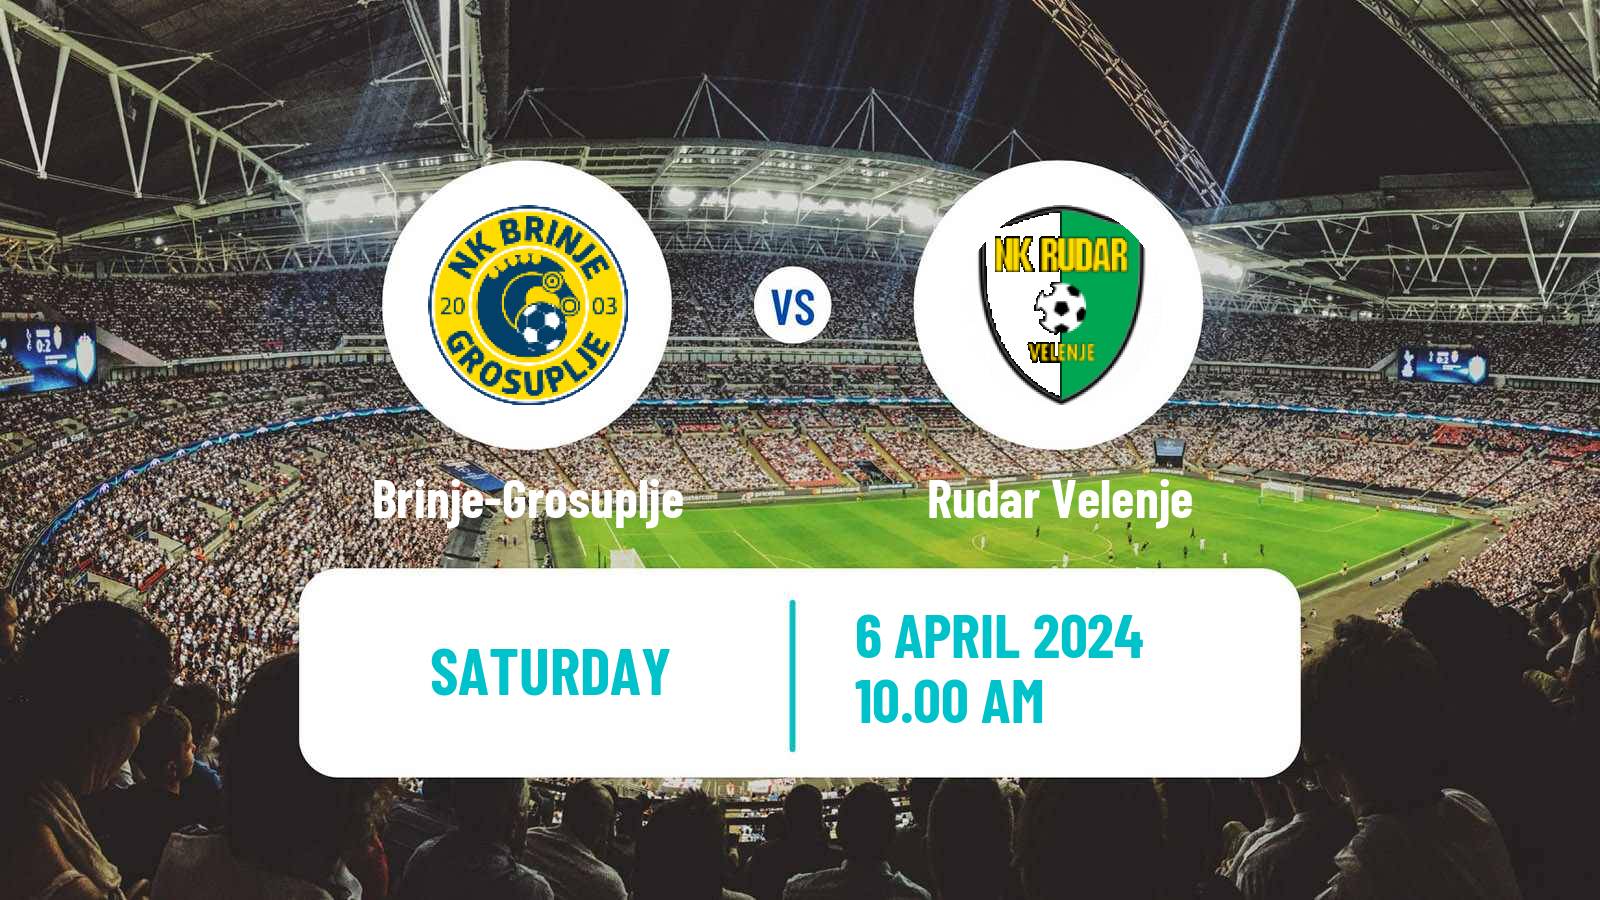 Soccer Slovenian 2 SNL Brinje-Grosuplje - Rudar Velenje